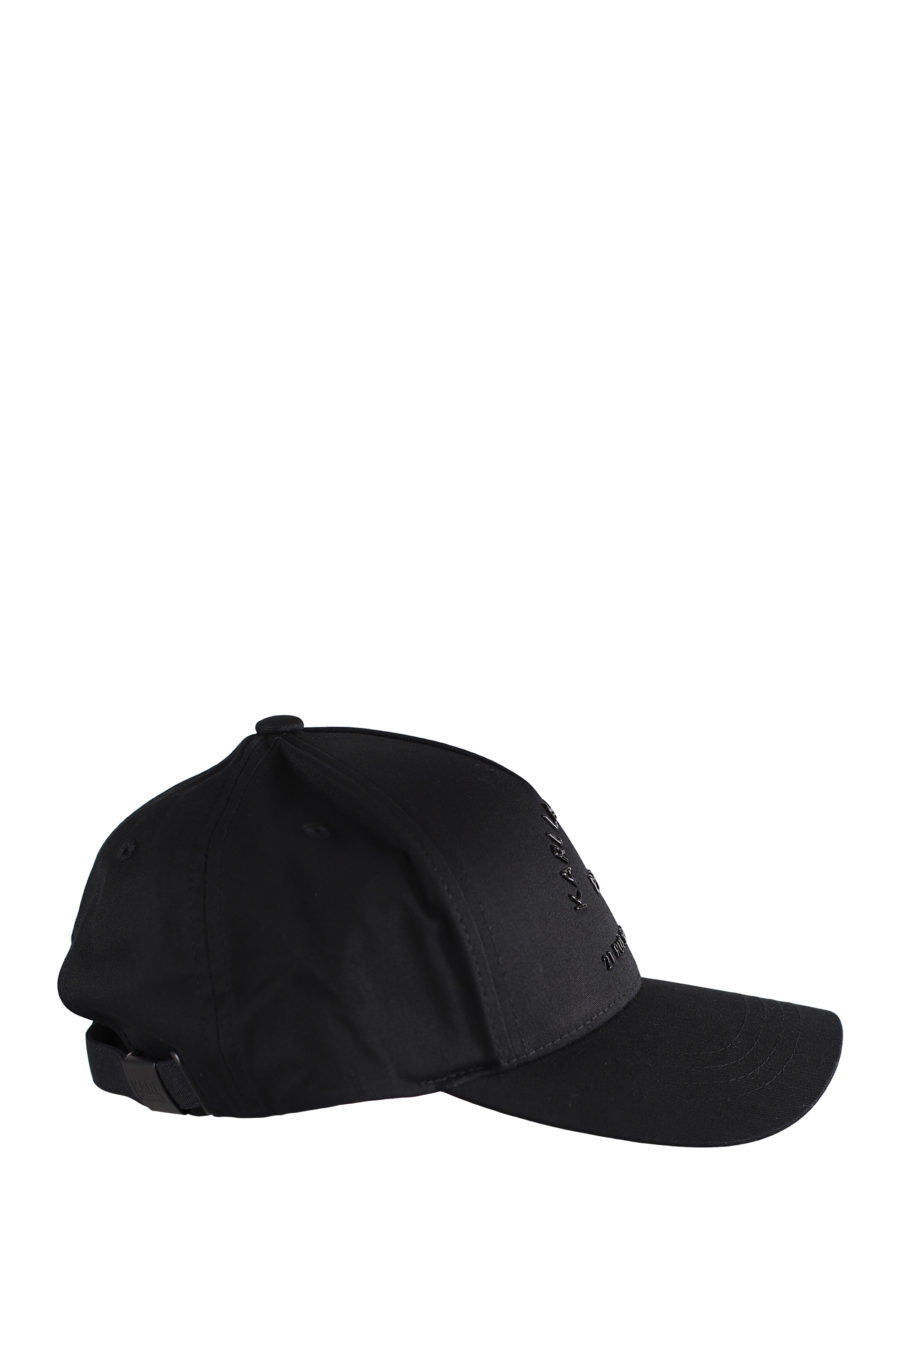 Gorra negra con logotipo negro en relieve - IMG 9599